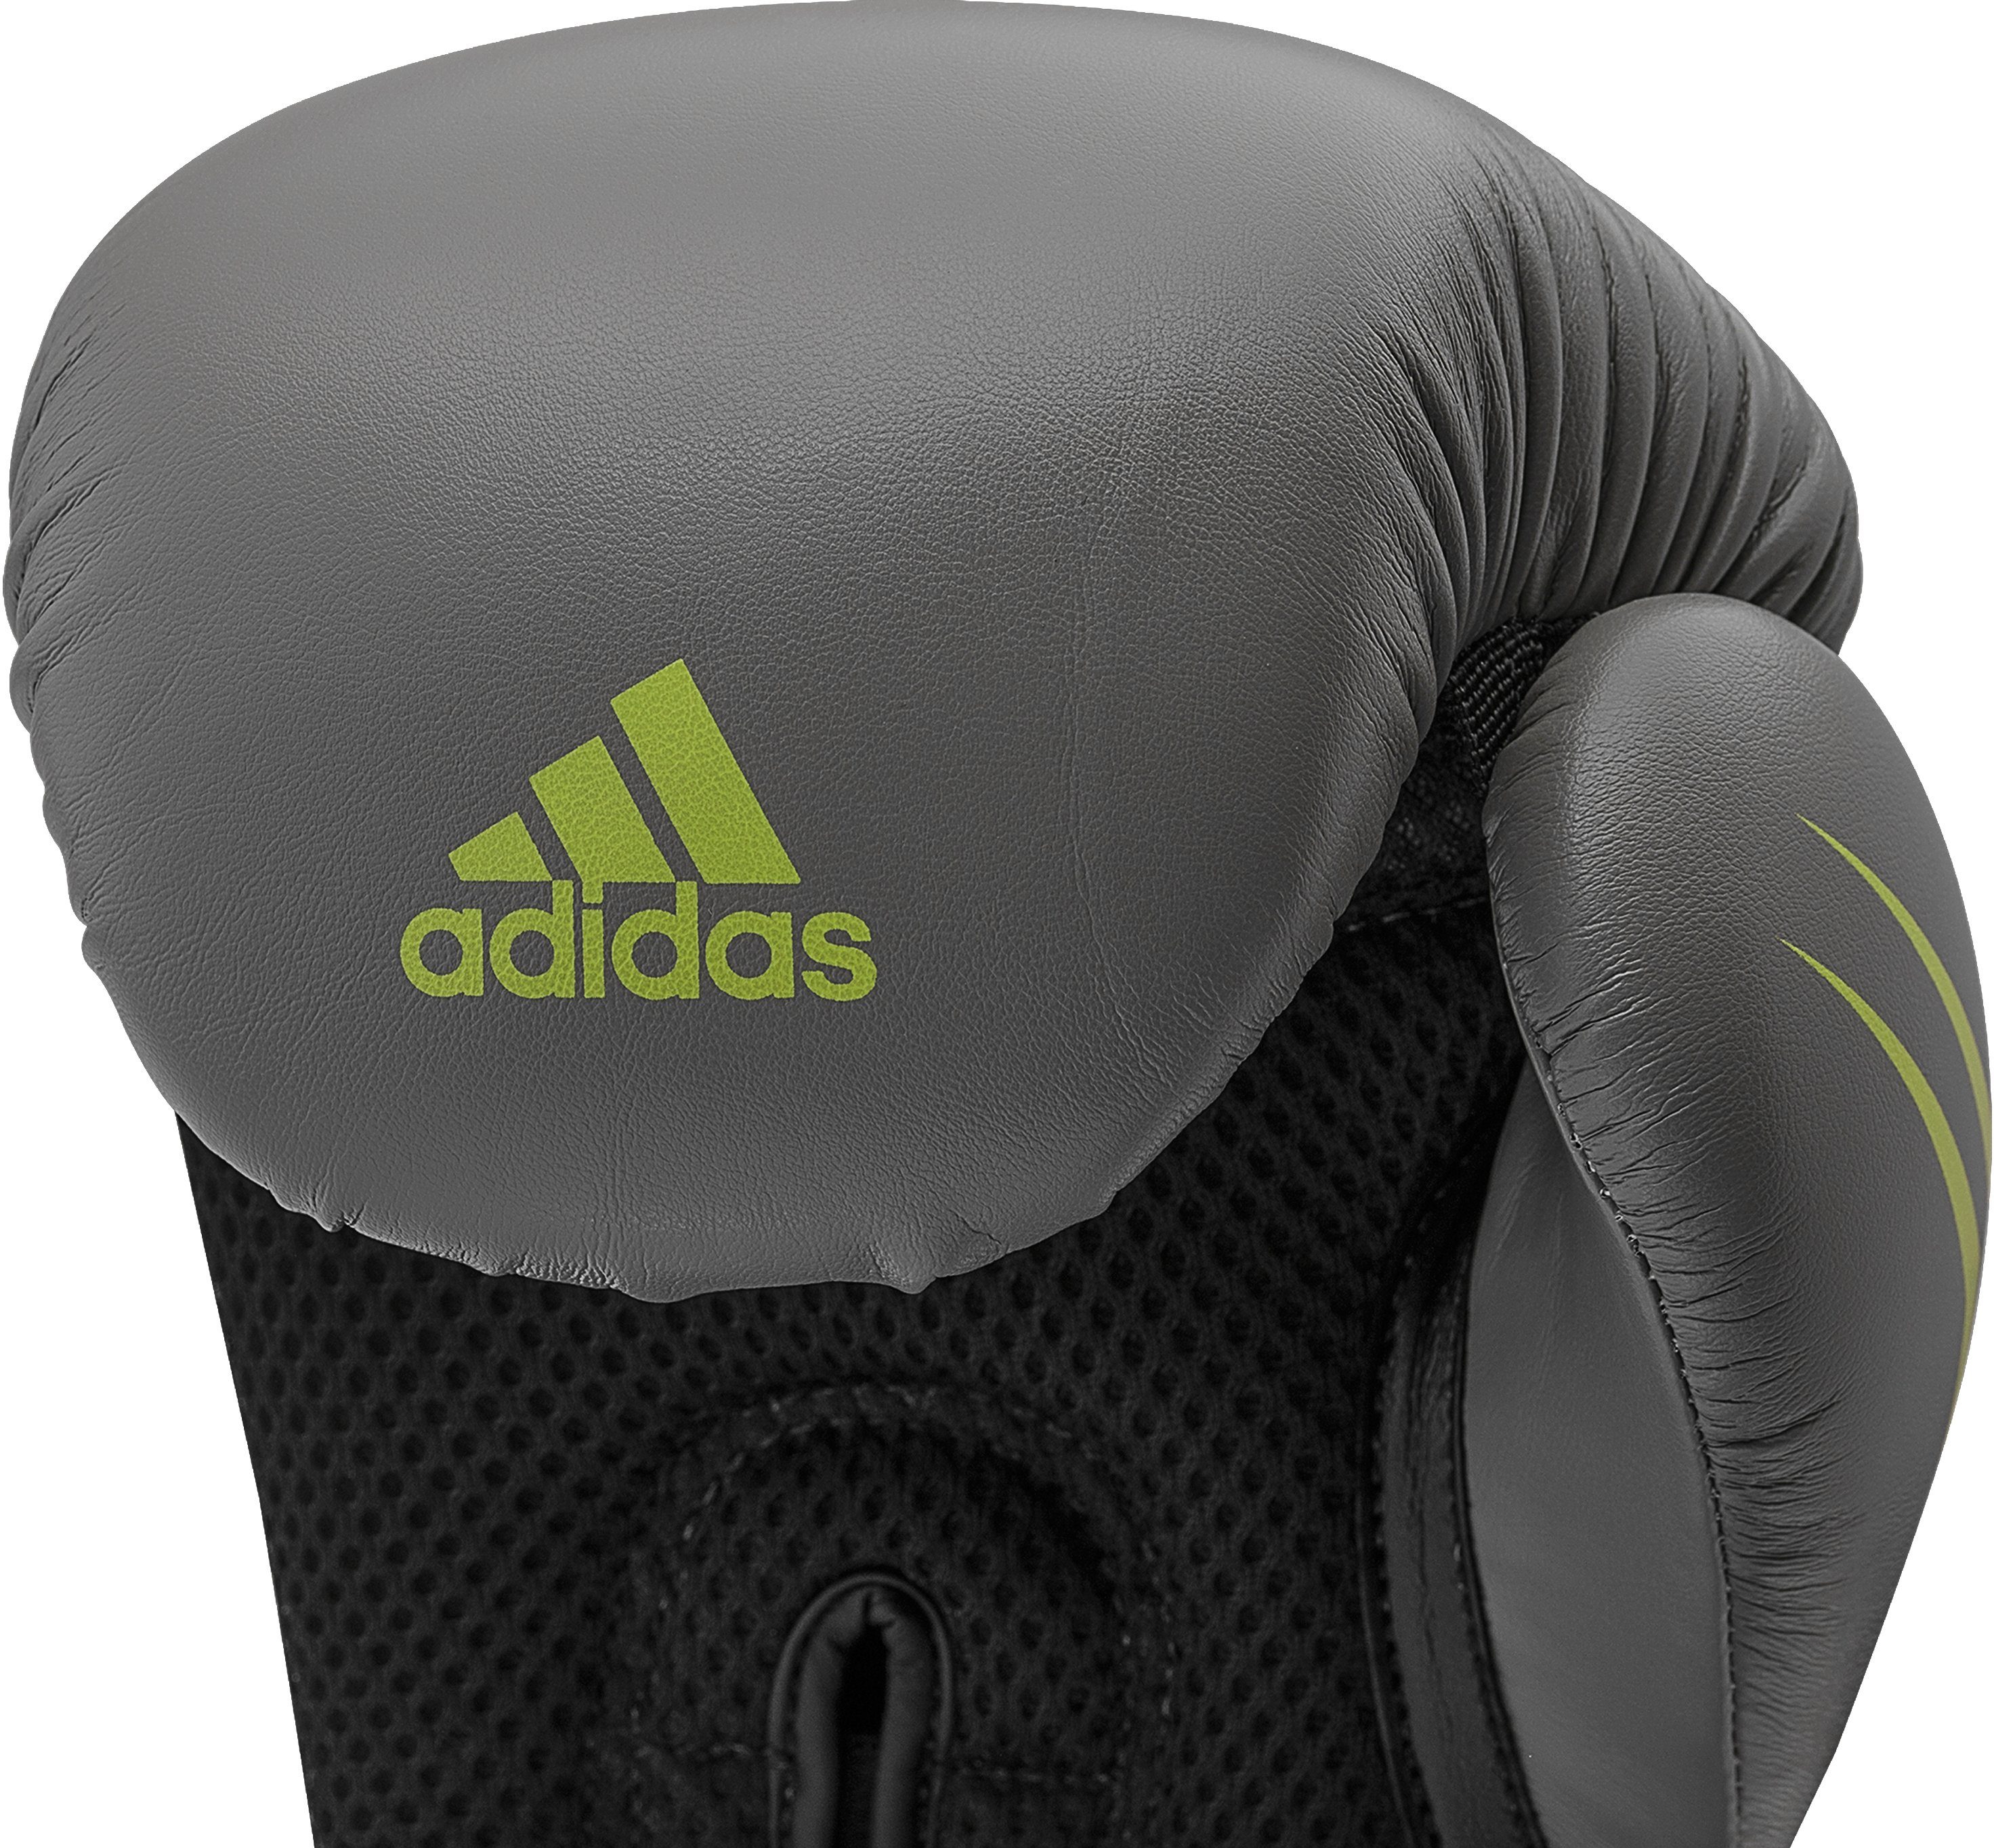 adidas 150 grau/schwarz Performance Speed Tilt Boxhandschuhe